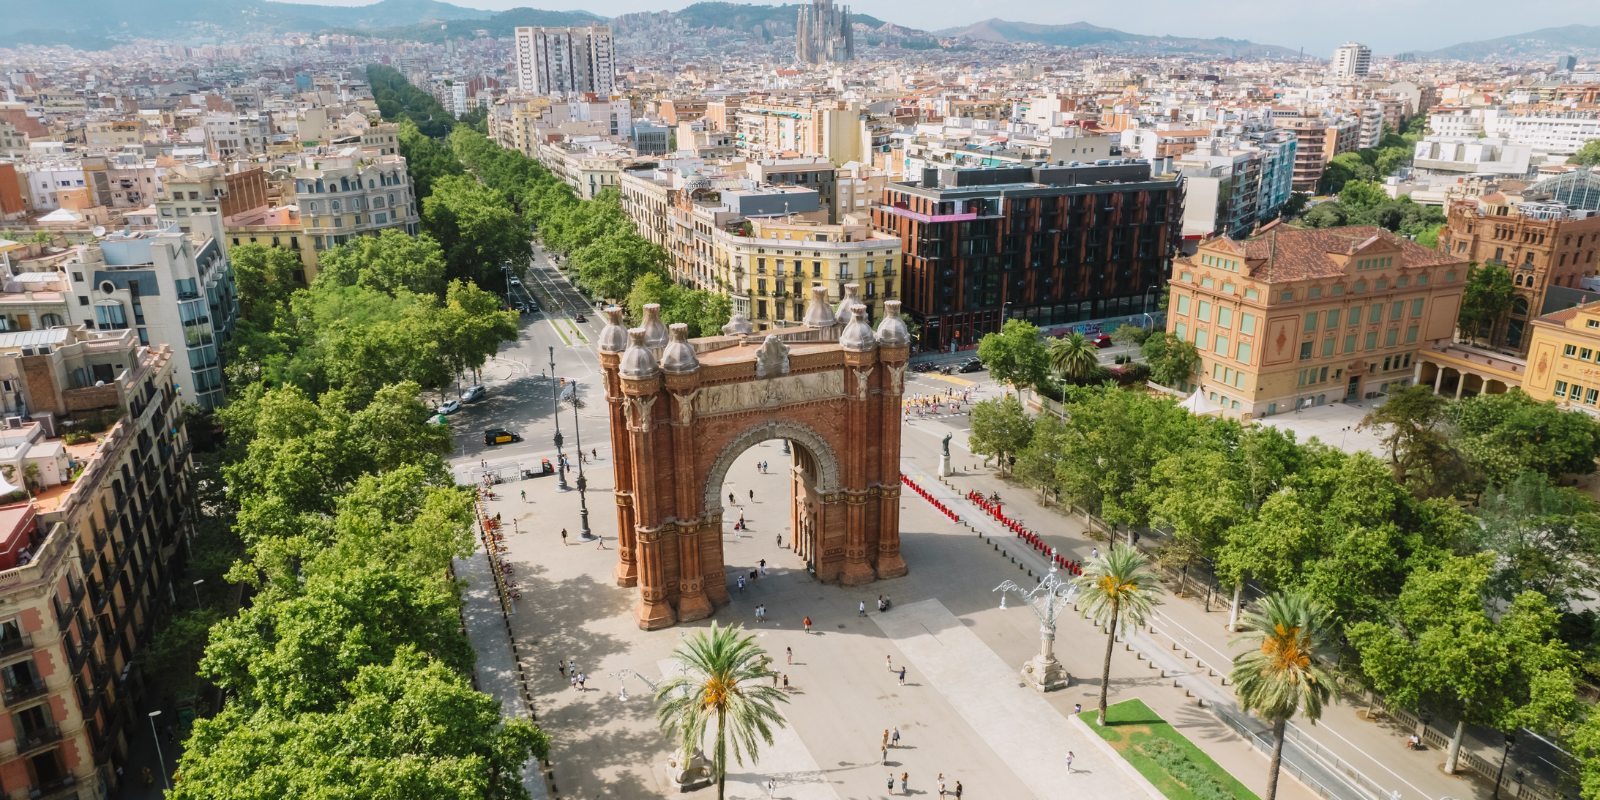 Fotografische hotspots in Barcelona